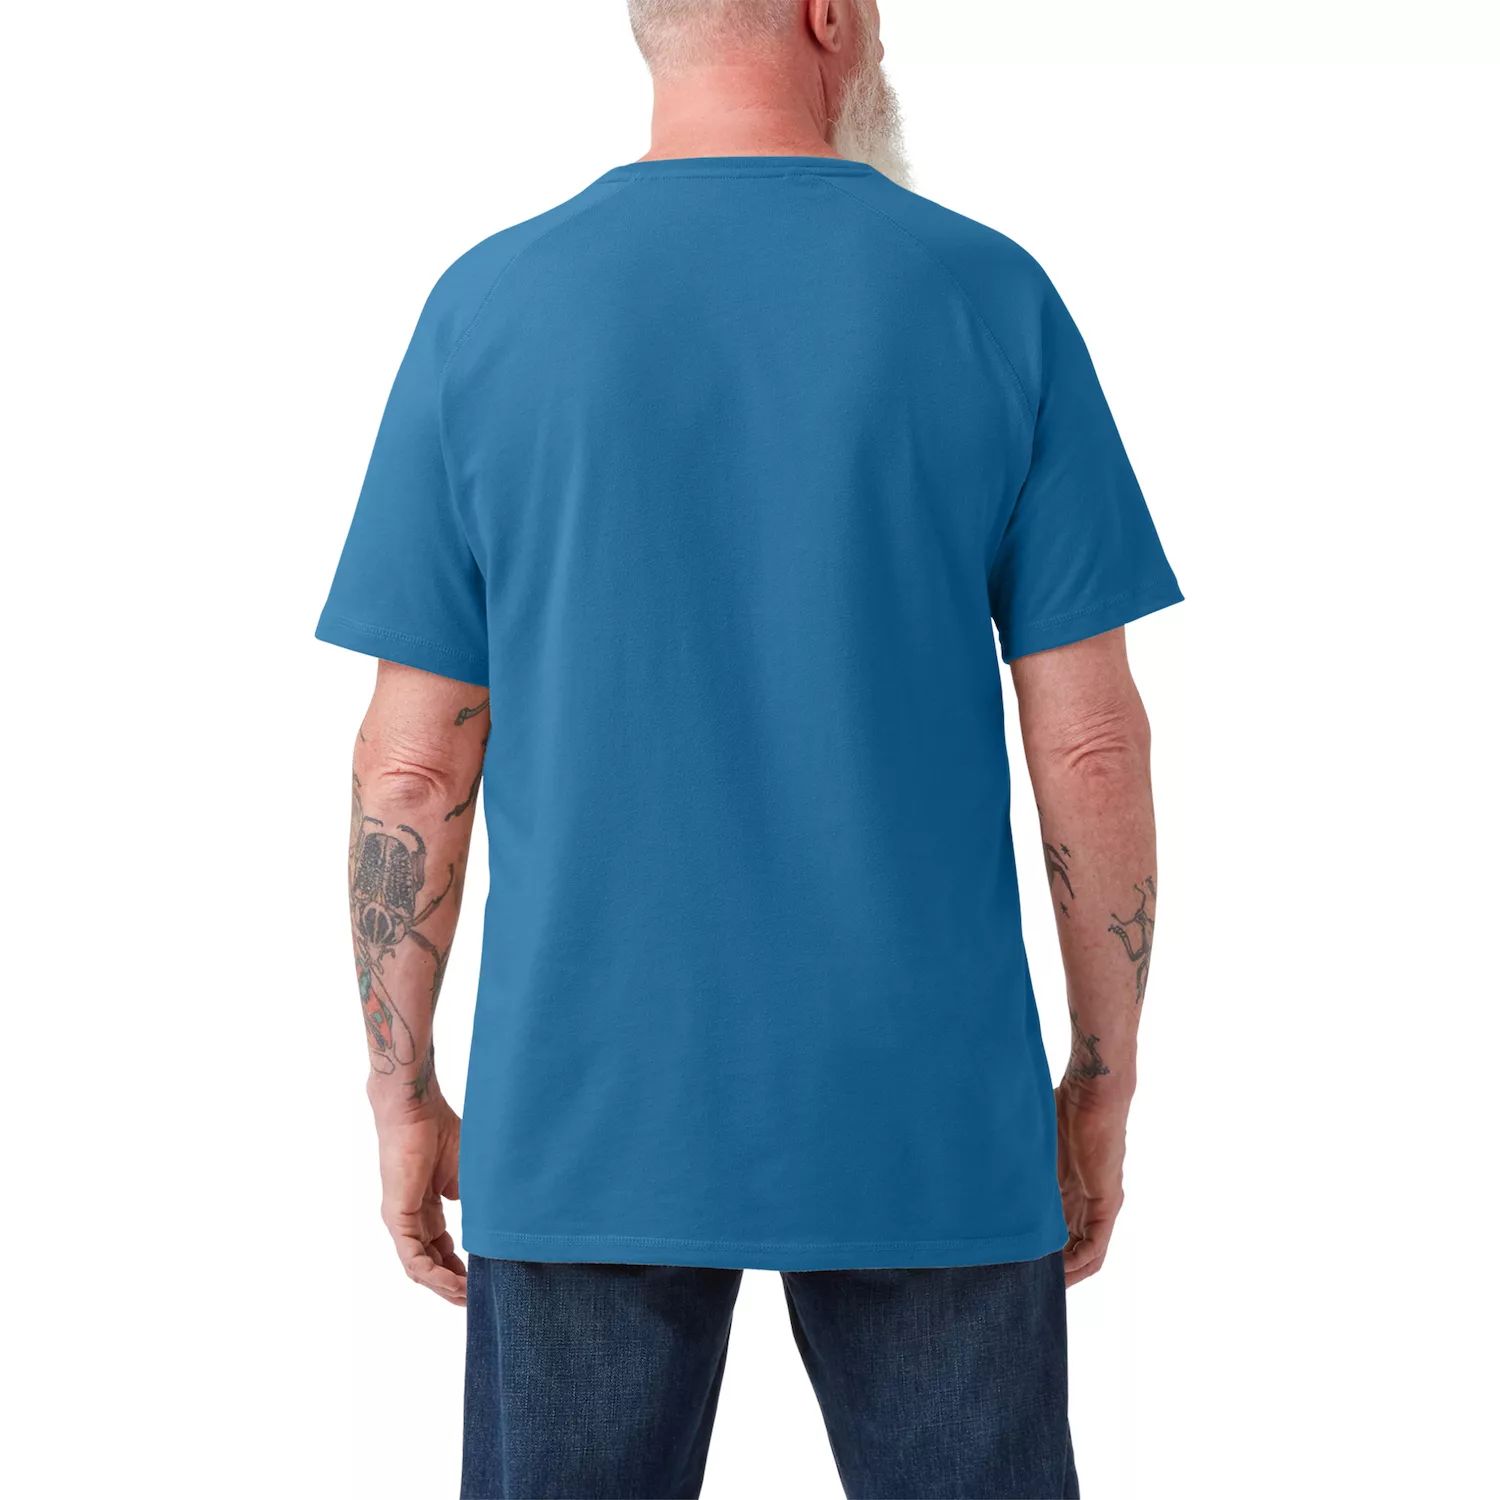 Мужская футболка тяжелого веса с тепловым покрытием Dickies свитер флисовый жилет l l bean цвет charcoal gray heather